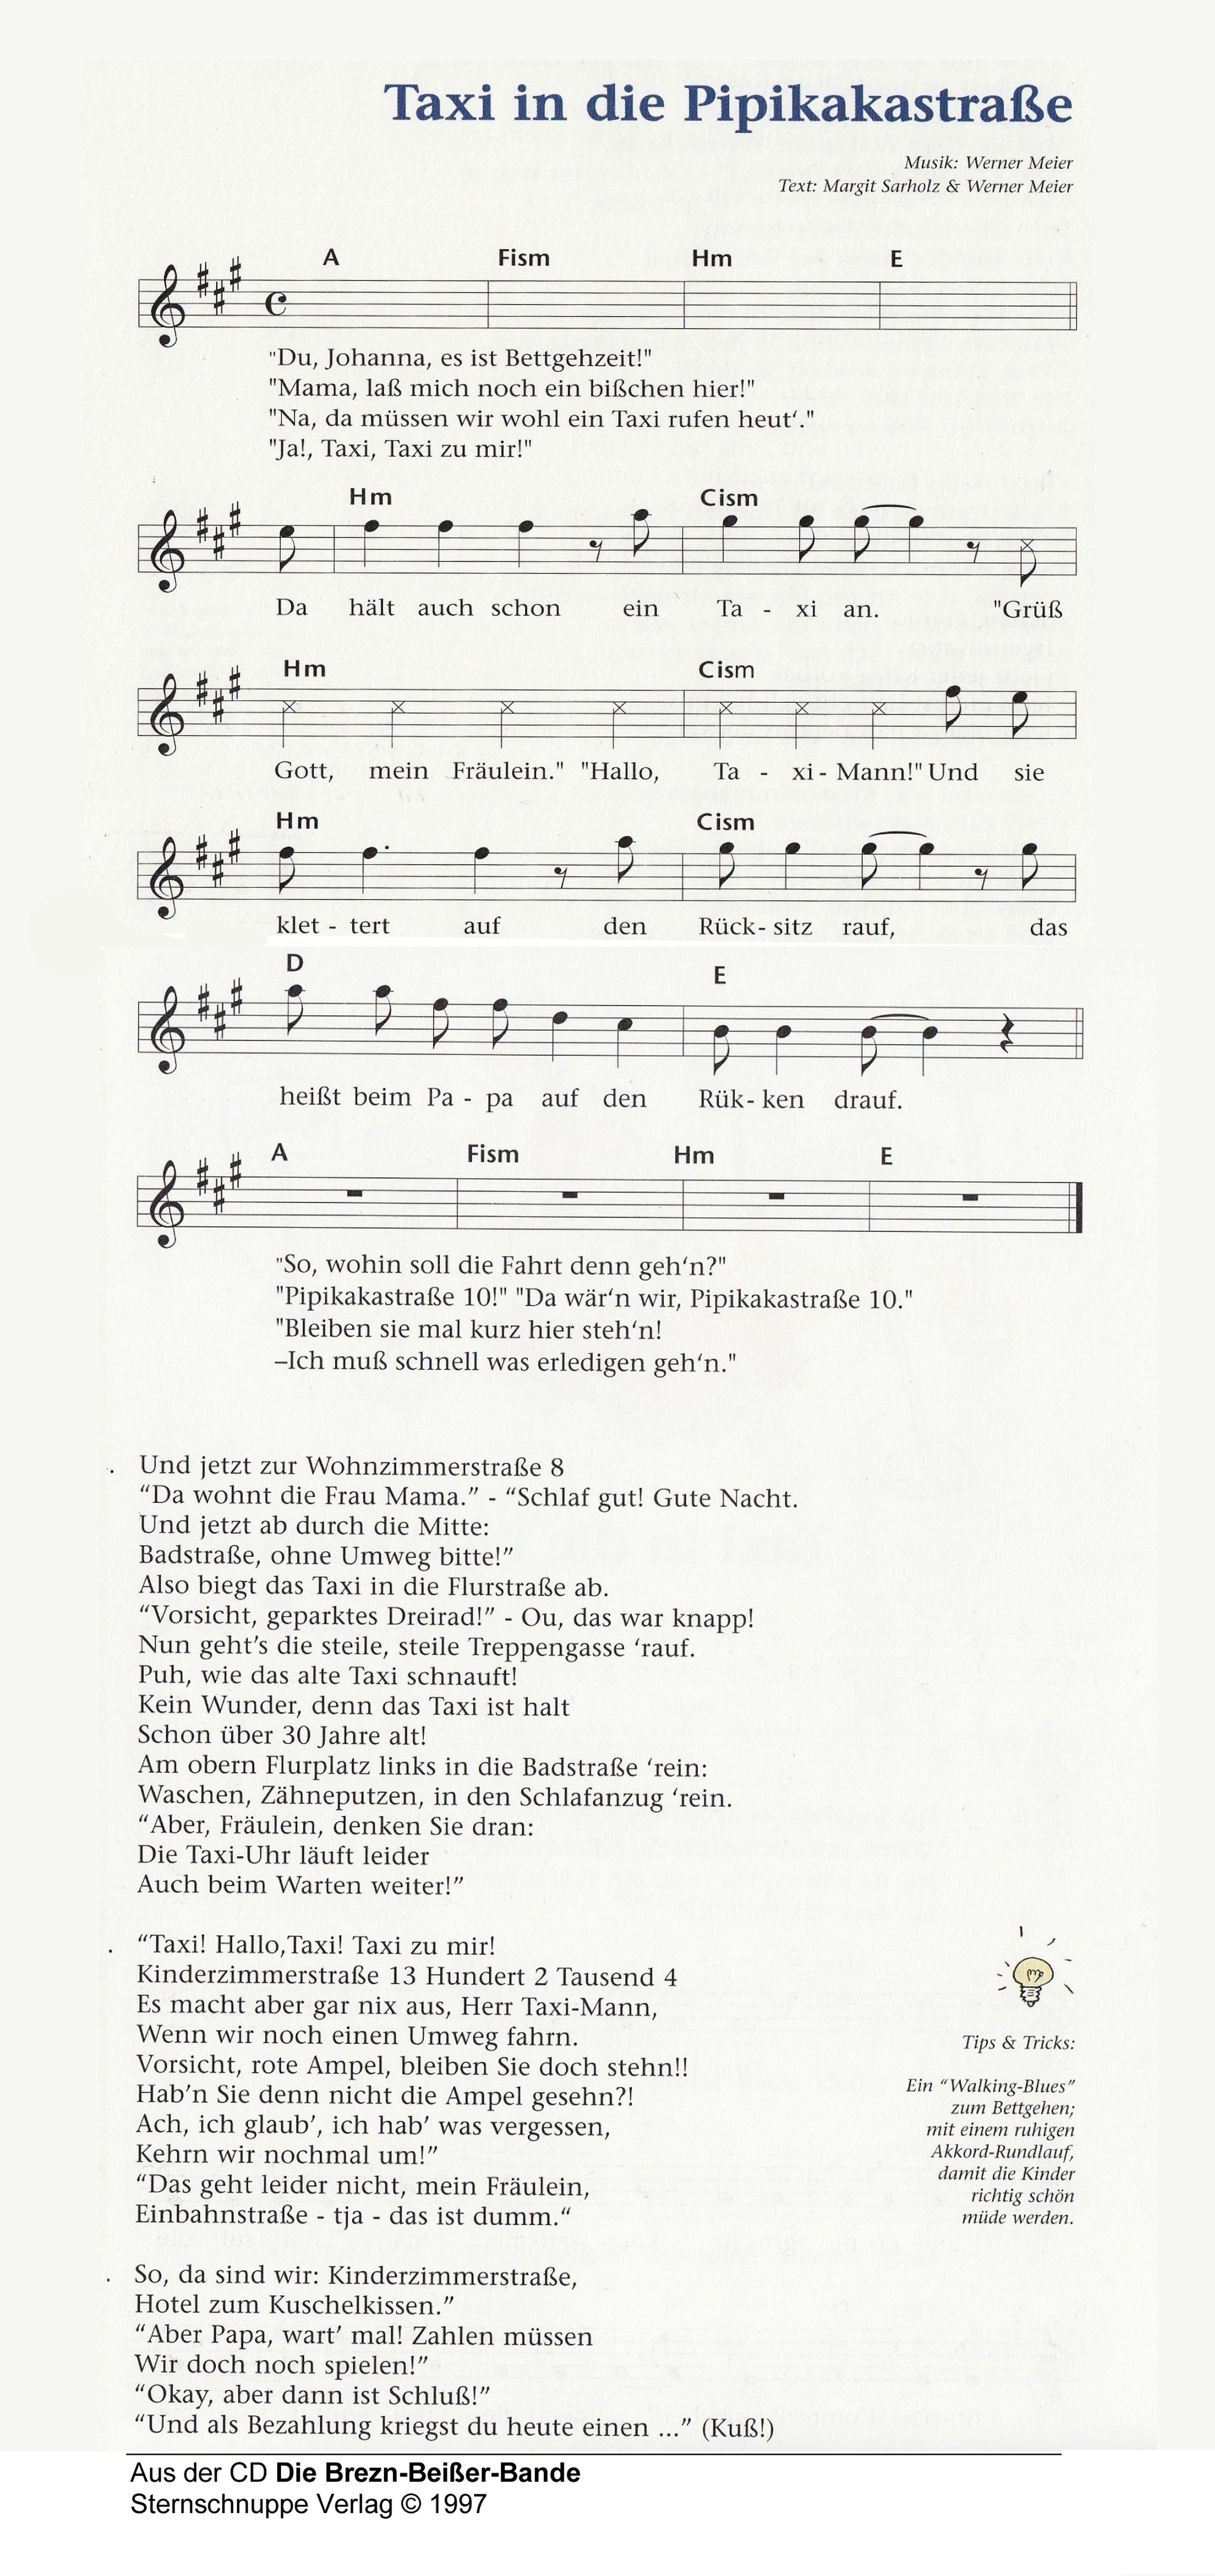 Liedtext, Akkorde und Noten vom Kinderlied Taxi in die Pipikakastraße